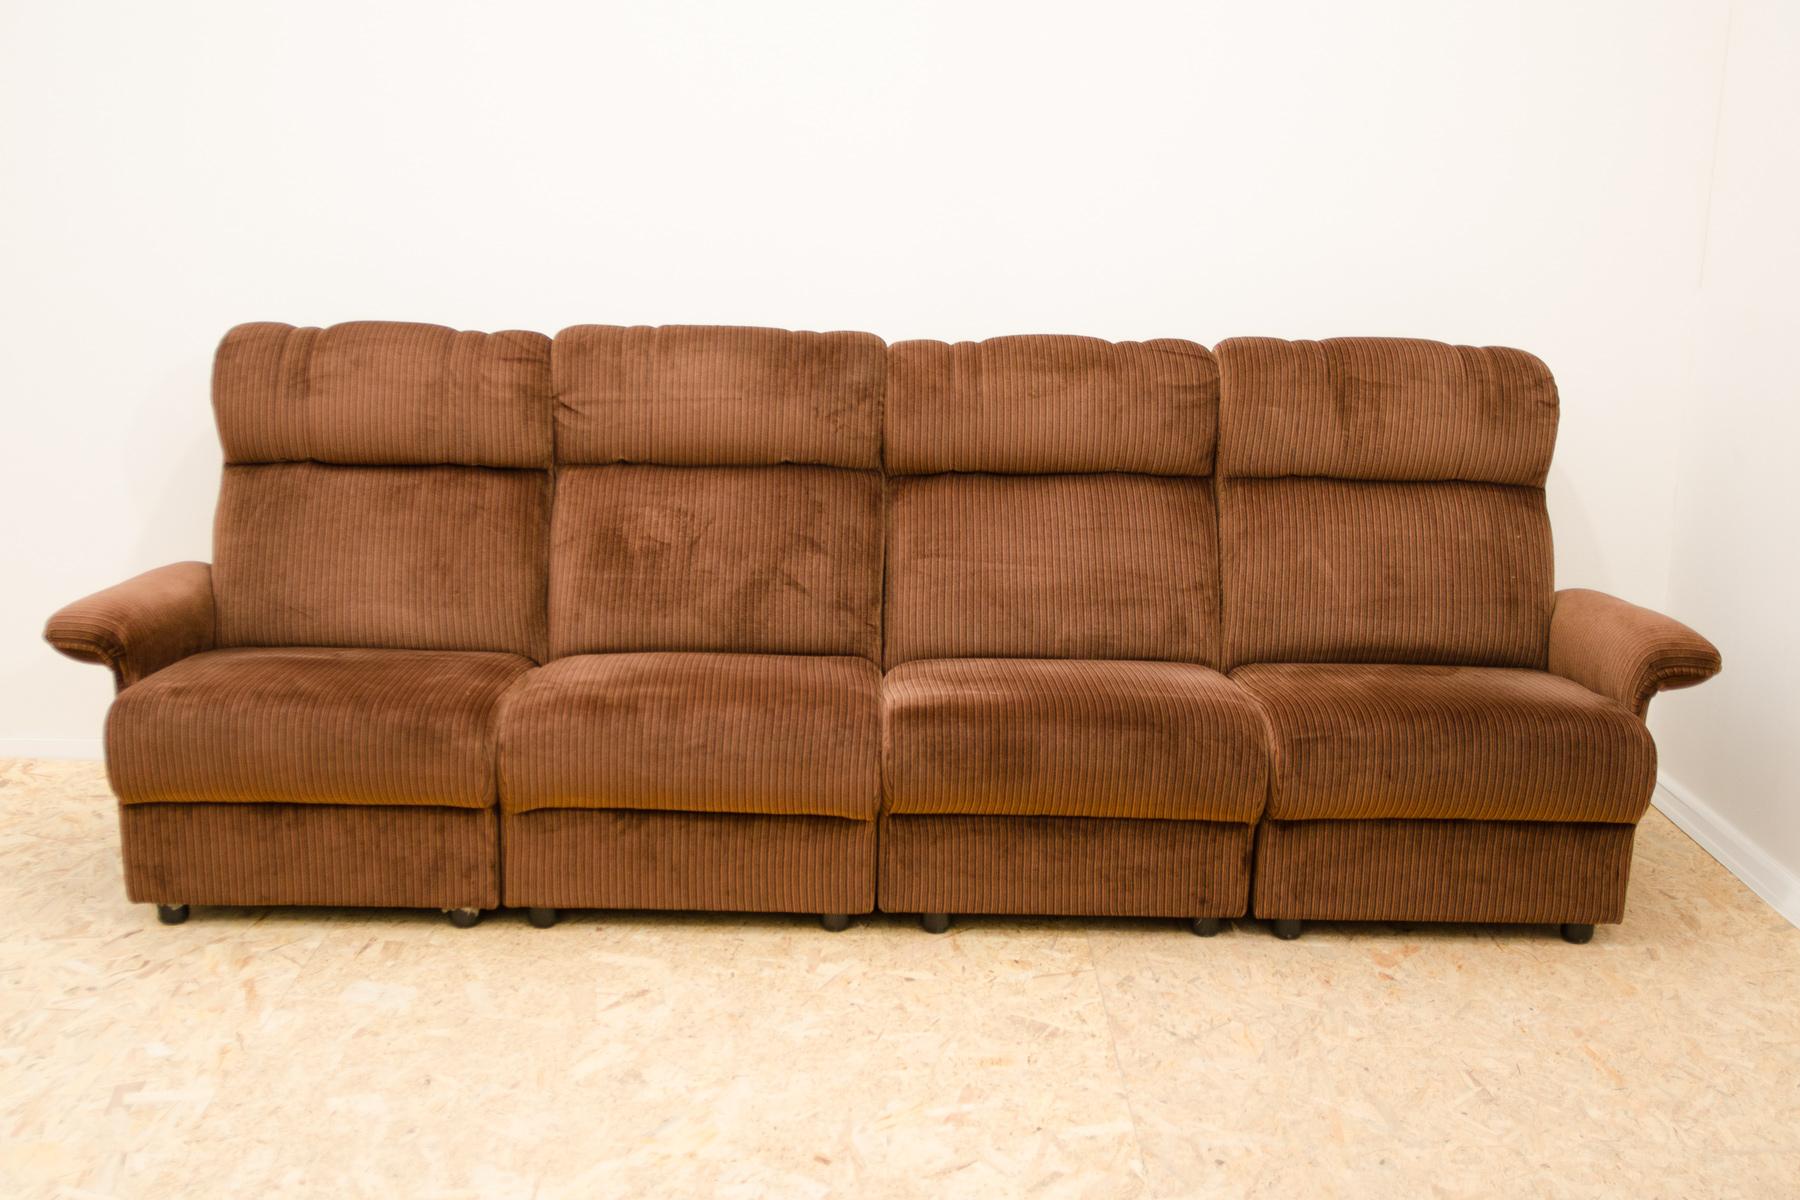 Dieses modulare Sofa wurde in den 80er Jahren in Mitteleuropa, wahrscheinlich in Deutschland, hergestellt. Er kann in 4 freistehende Sessel auf Rädern unterteilt werden. Er ist aus Sperrholz, Schaumstoff, Holz und Polsterung gefertigt und mit